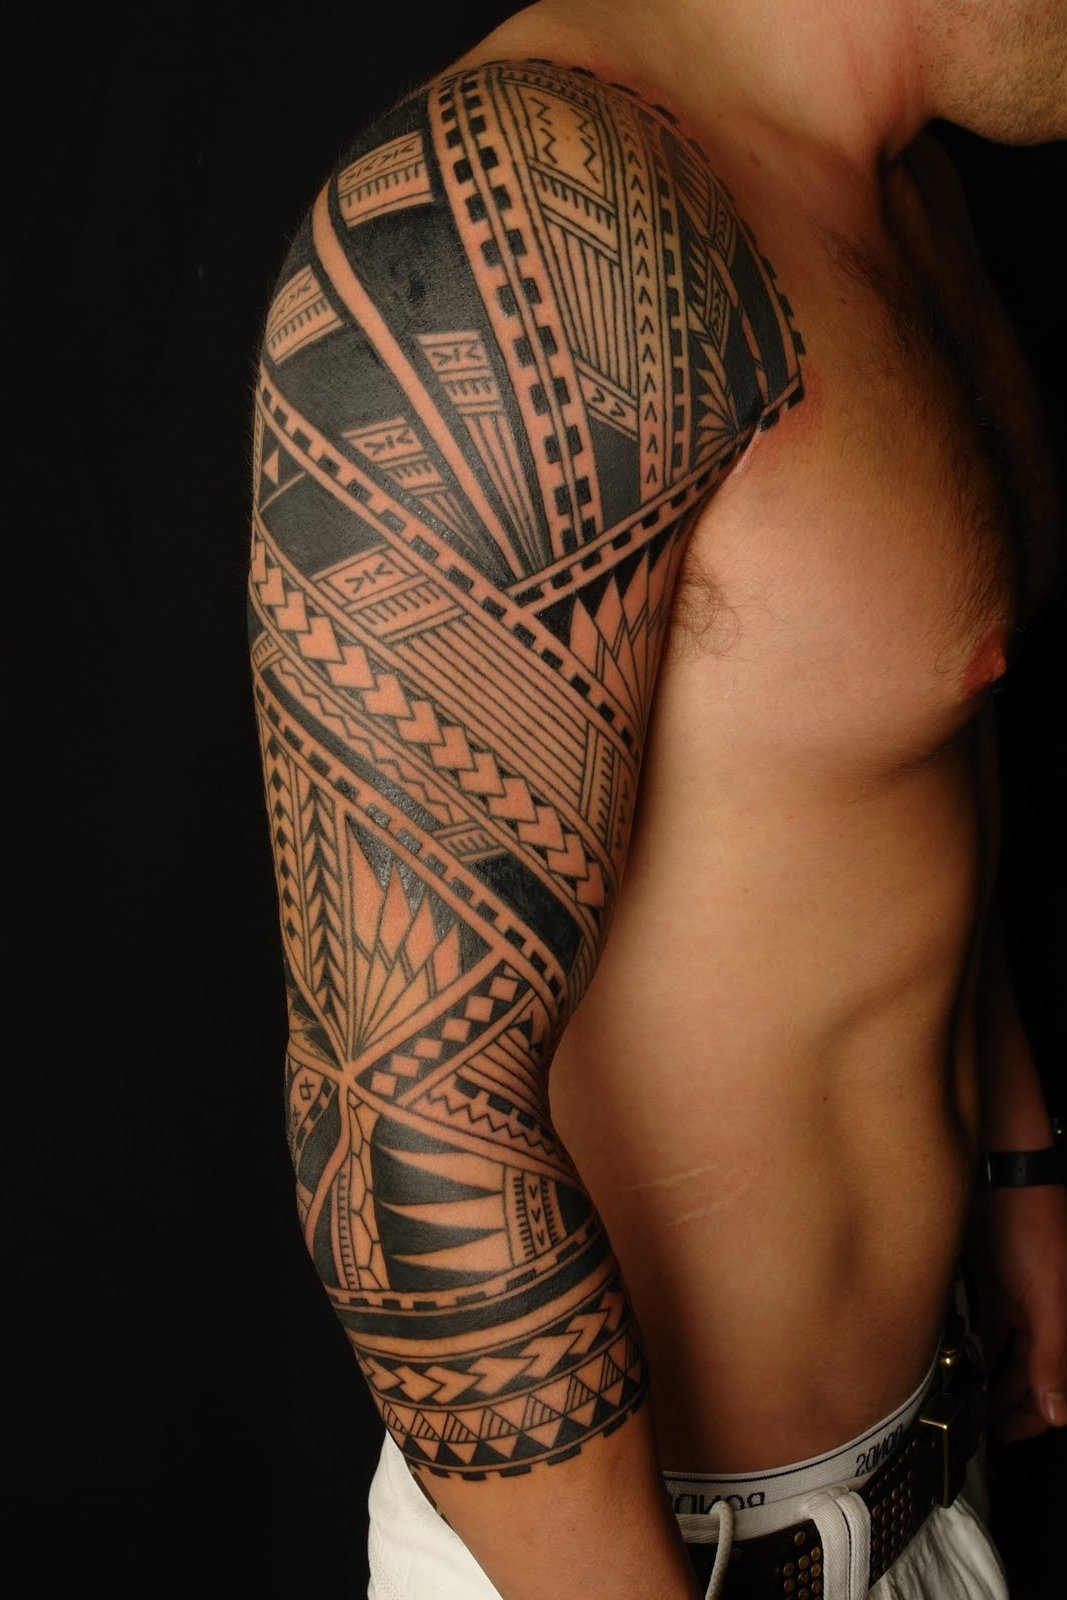 10 Ideal Tattoo Ideas For Black Men tattoo sleeve ideas for black men cool images tattoo sleeve design 1 2022